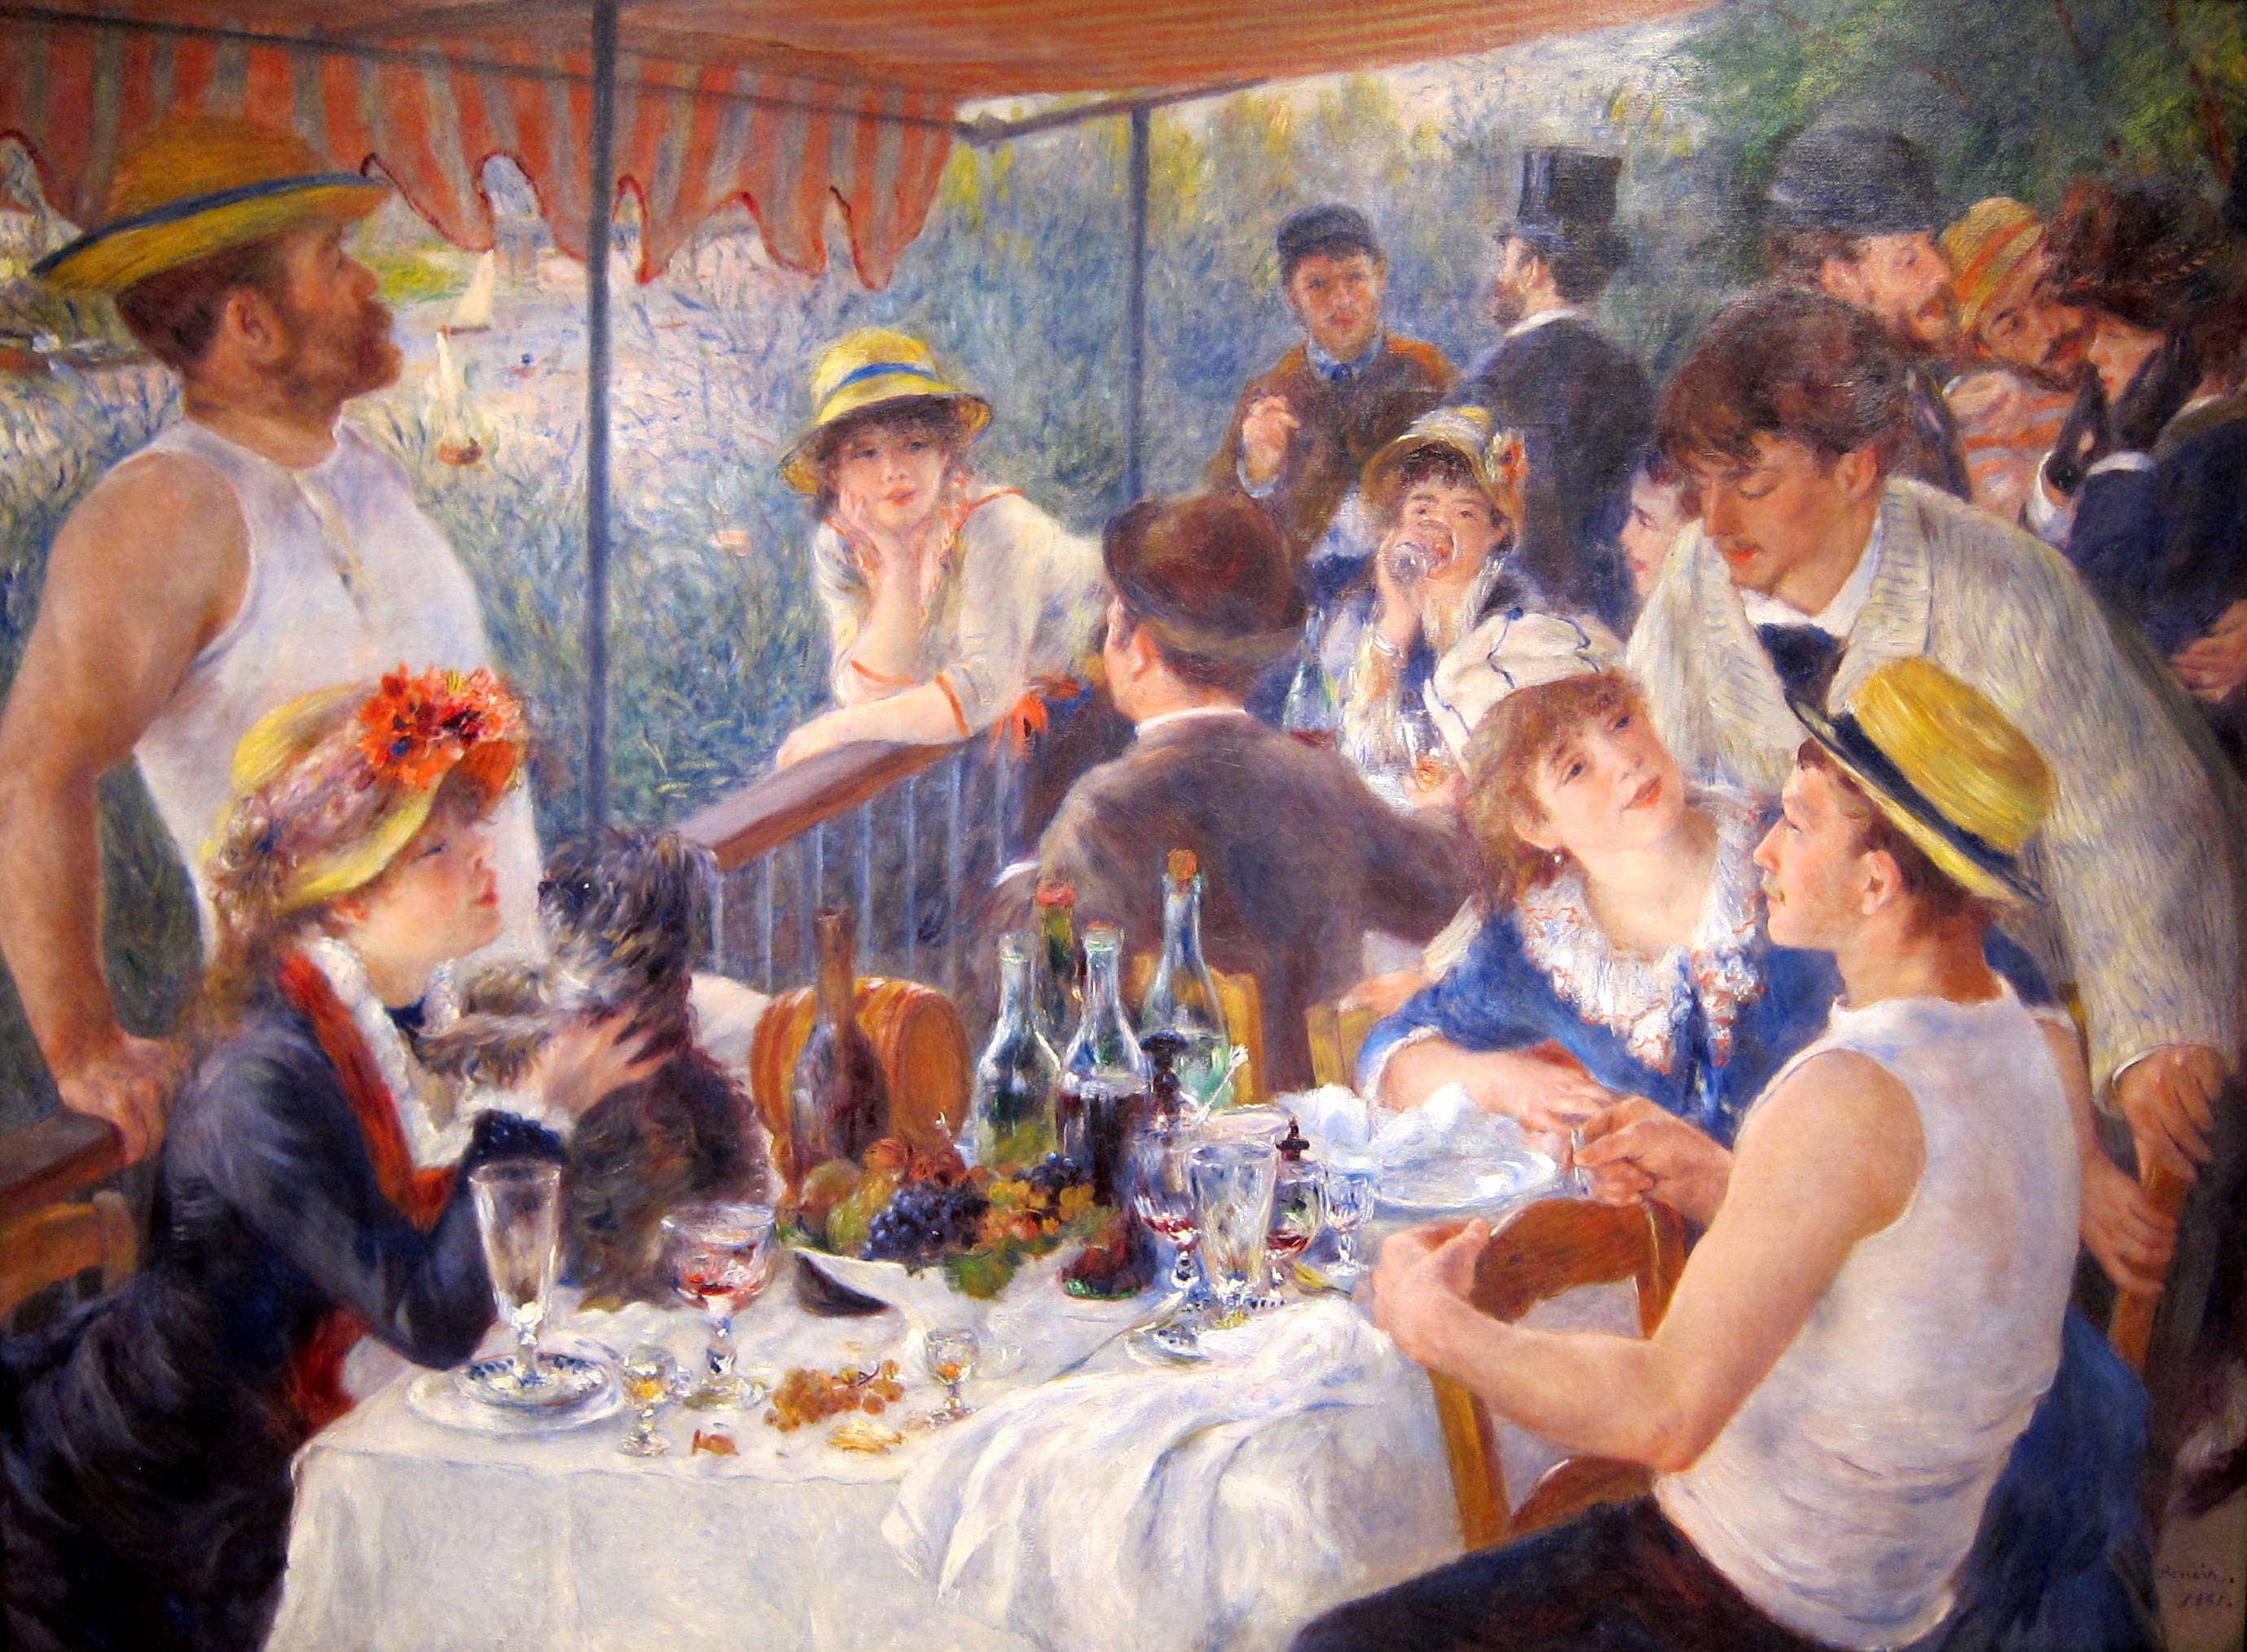 El almuerzo de los remeros by Pierre-Auguste Renoir - 1880 - 129.9 × 172.7 cm Colección Phillips